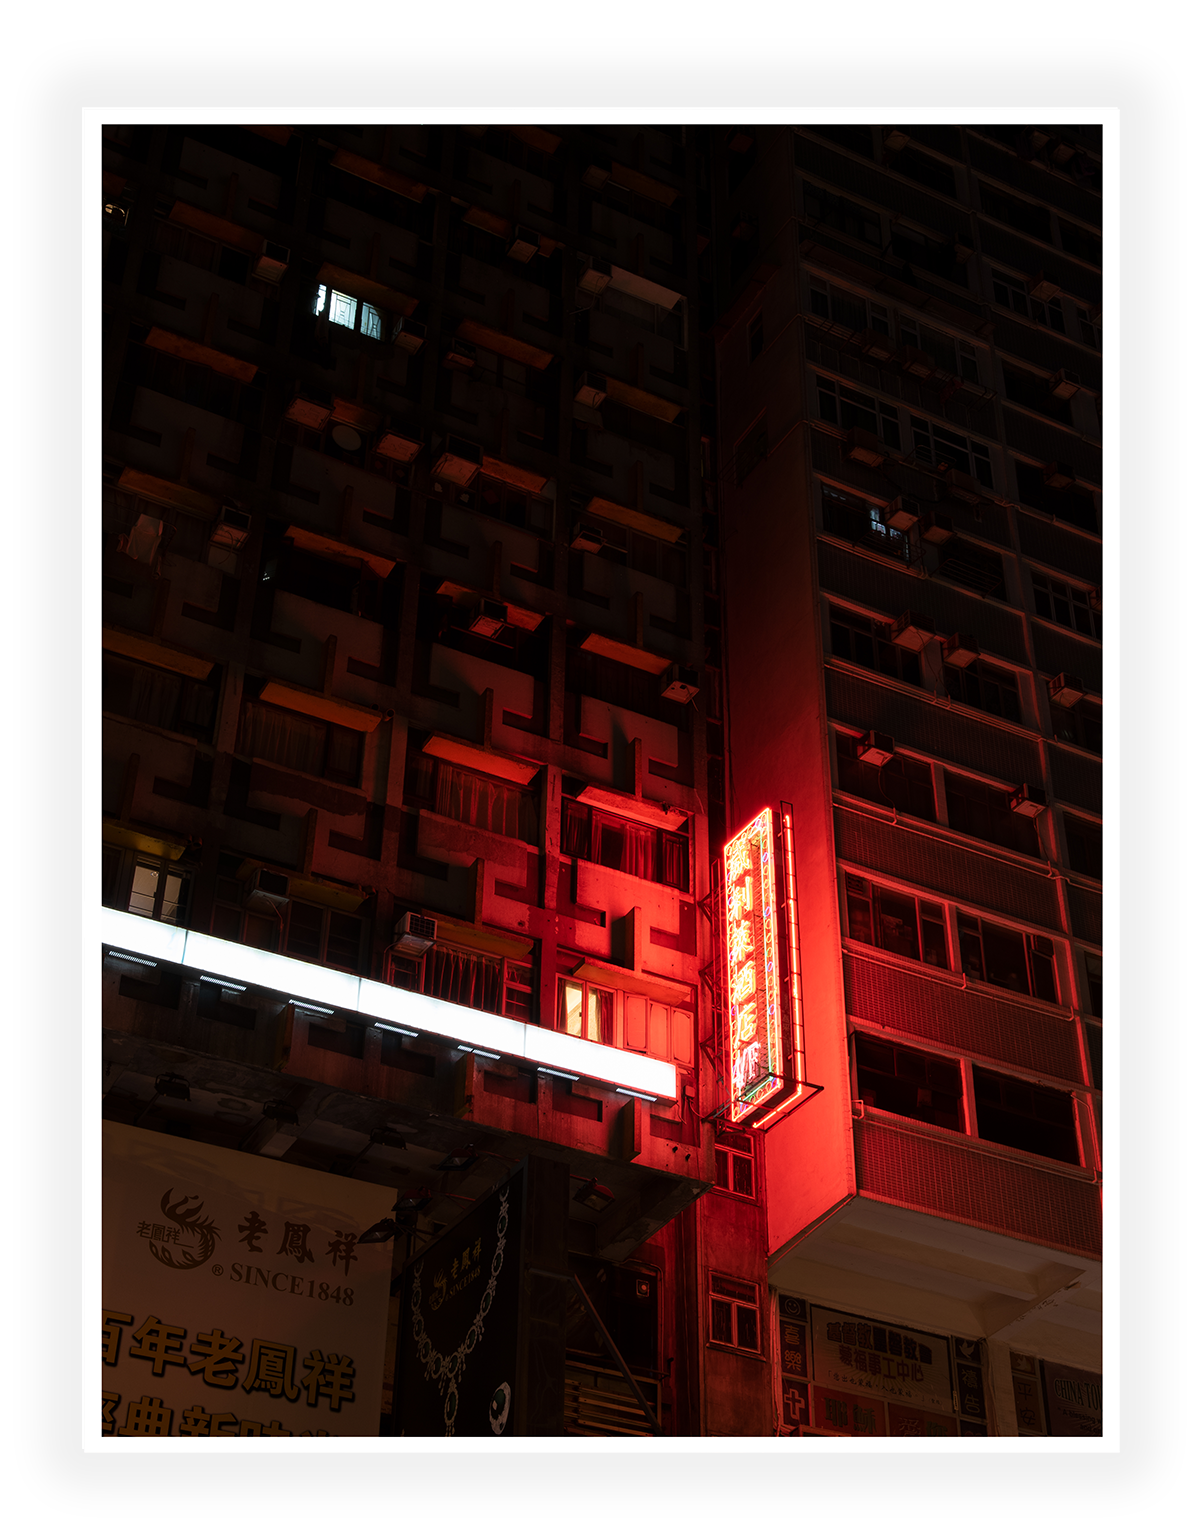 Hong Kong - Neon Lights